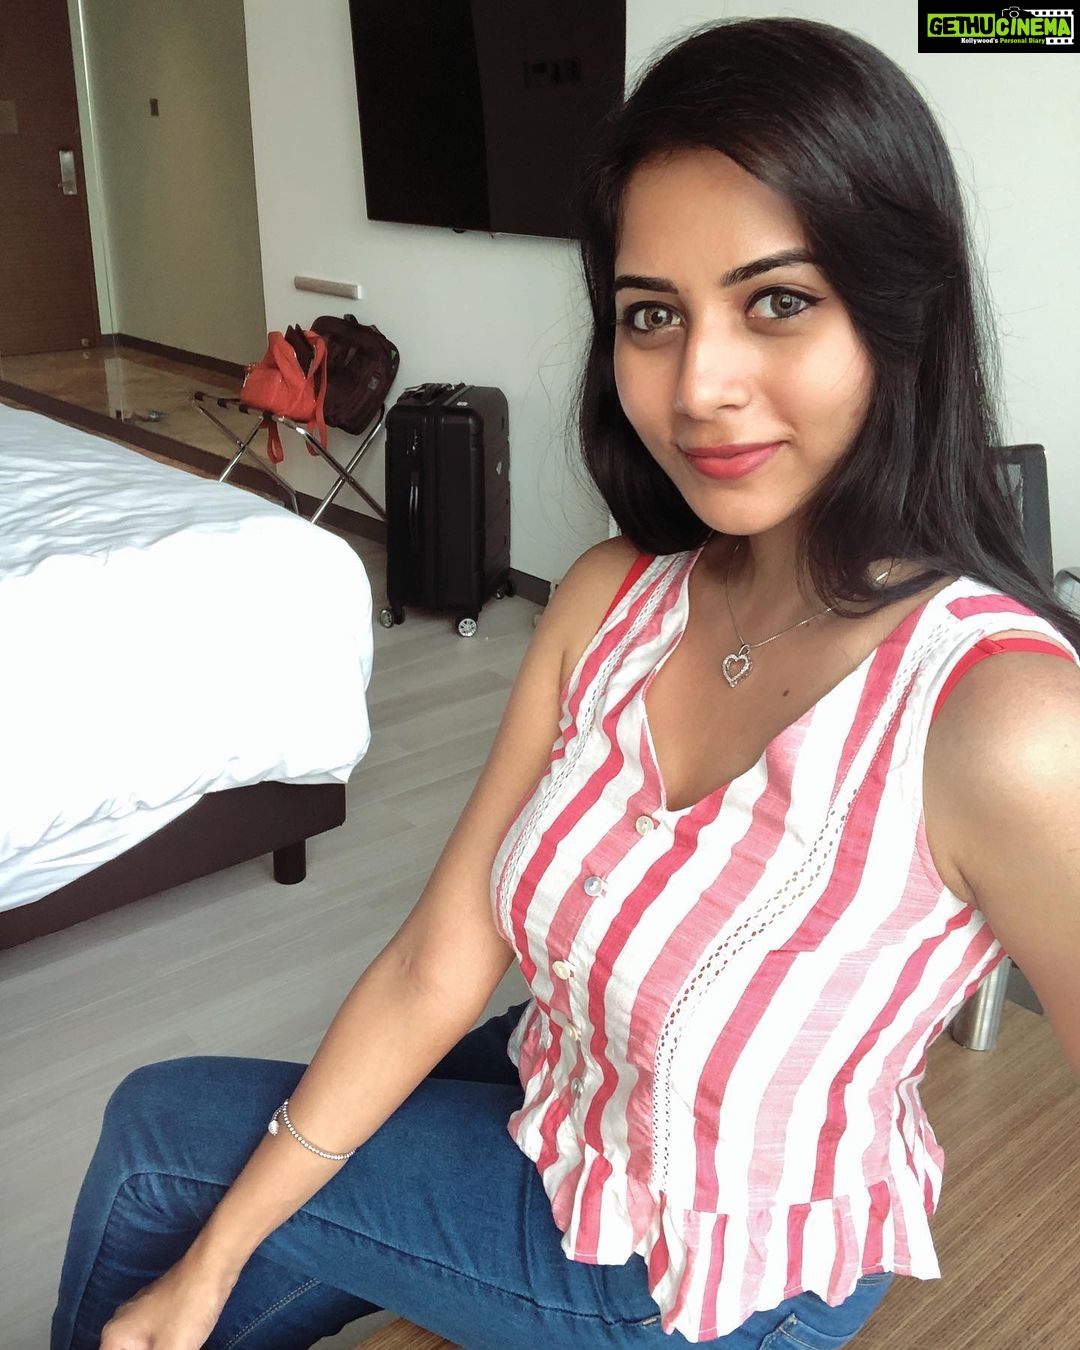 Suza Kumar - 20.8K Likes - Most Liked Instagram Photos